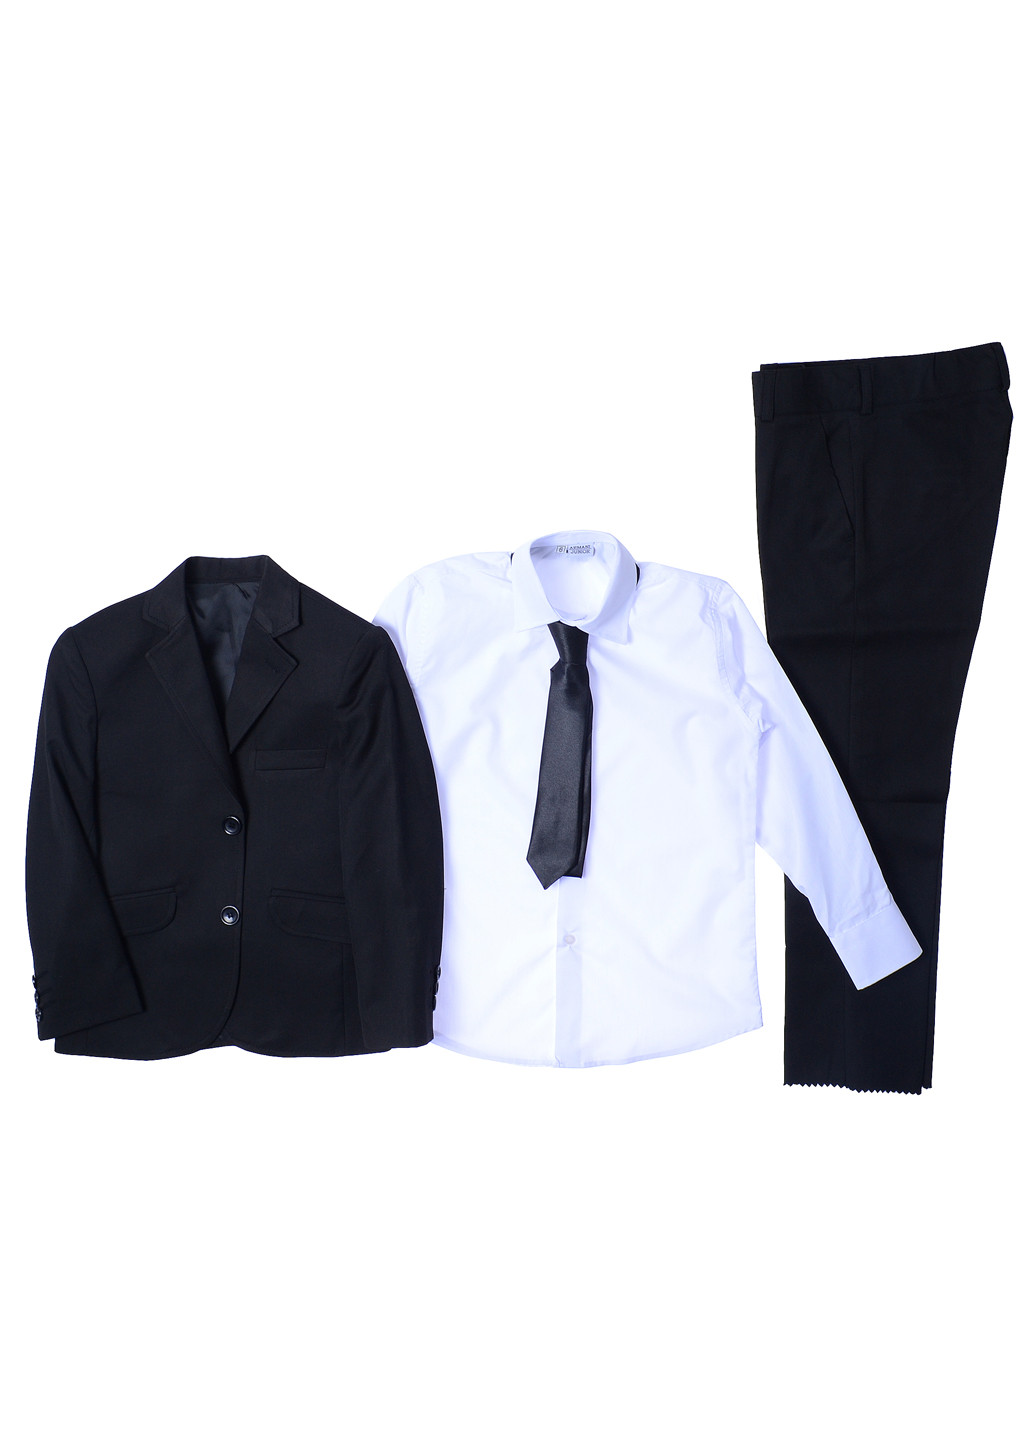 Чорний демісезонний костюм (піджак, брюки, сорочка, краватка) трійка Jnf